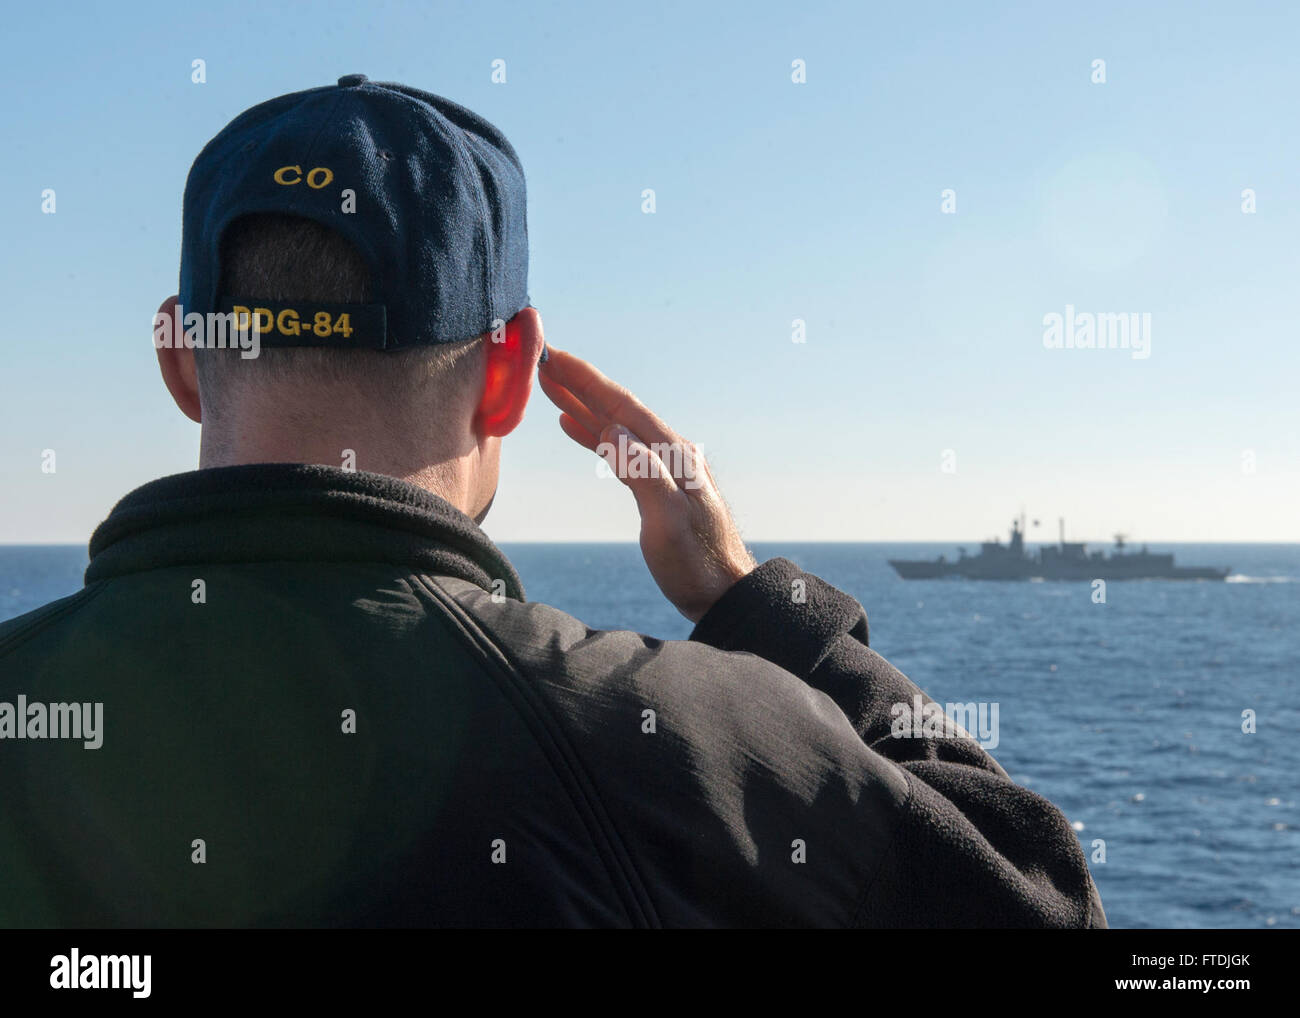 151206-N-AO823-112-Ägäis (6. Dezember 2015)--CMdR Hank Allen, Kommandierender Offizier der geführte Flugkörper Zerstörer USS Bulkeley (DDG-84), Renditen Ehrungen, die Elli-Klasse Fregatte HS Aigaion (F 460) während einer Übung auf See mit der griechischen Marine. Bulkeley, Bestandteil der Harry S. Truman Carrier Strike Group, führt Marinebetriebe in den USA 6. Flotte Bereich der Maßnahmen zur Erhöhung der Sicherheit der Vereinigten Staaten in Europa und Afrika interessiert. (Foto: U.S. Navy Mass Communication Specialist 2. Klasse m.j. Lieberknecht/freigegeben) Stockfoto